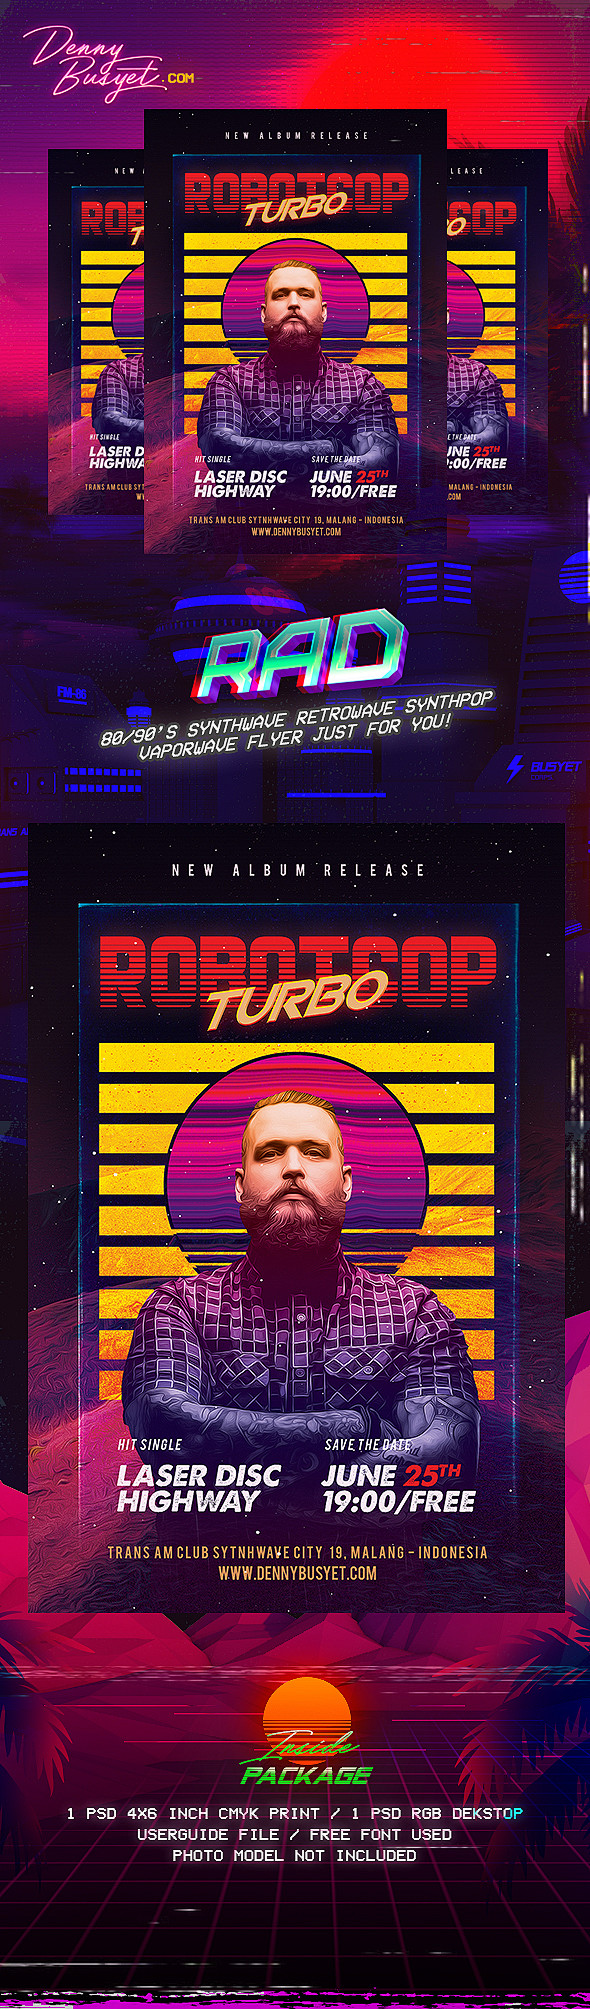 Robotcop Turbo Retro...